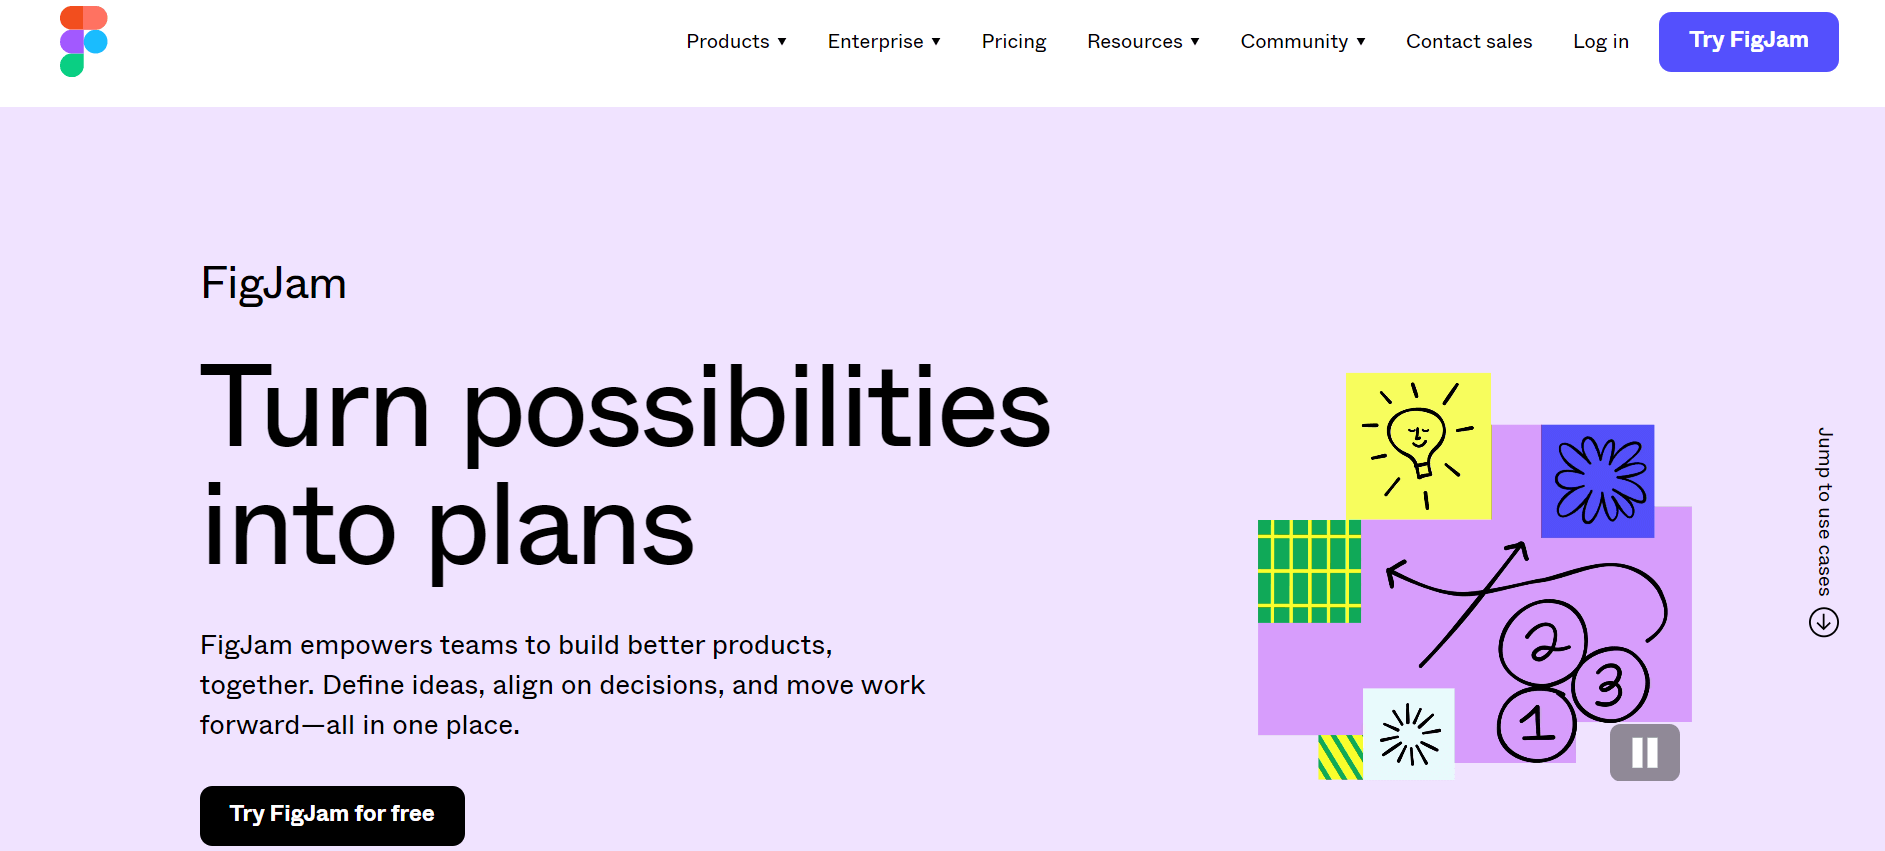 FigJam's homepage